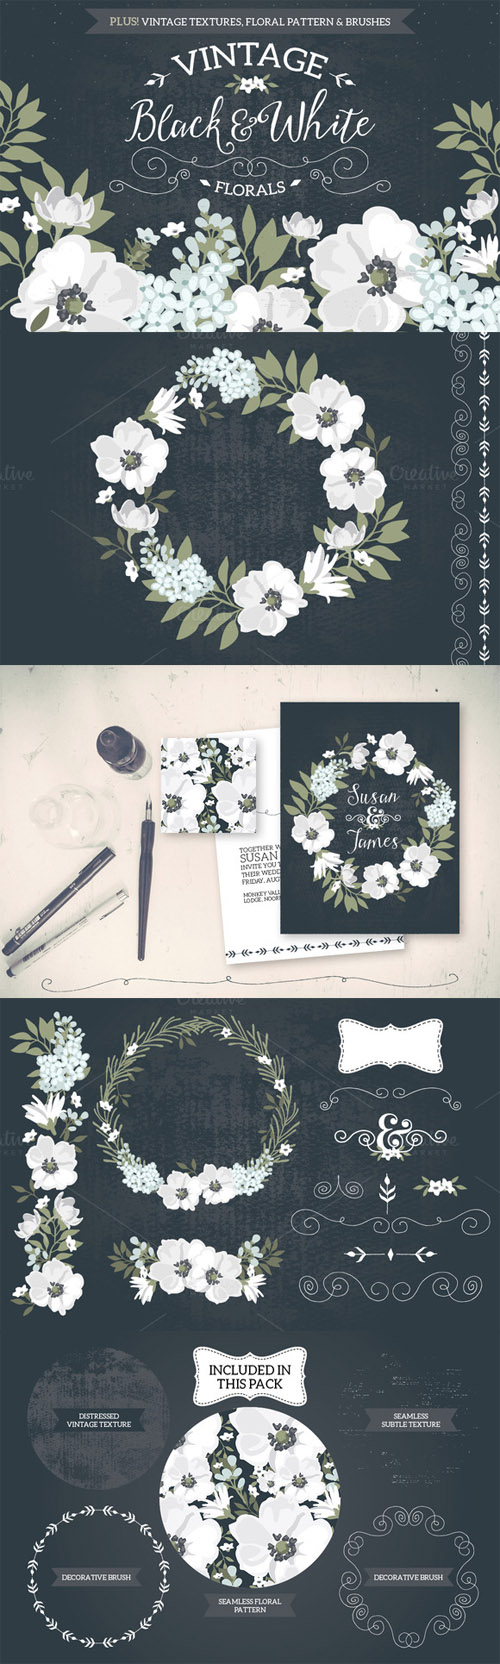 CreativeMarket - Vintage Black & White Florals 76119